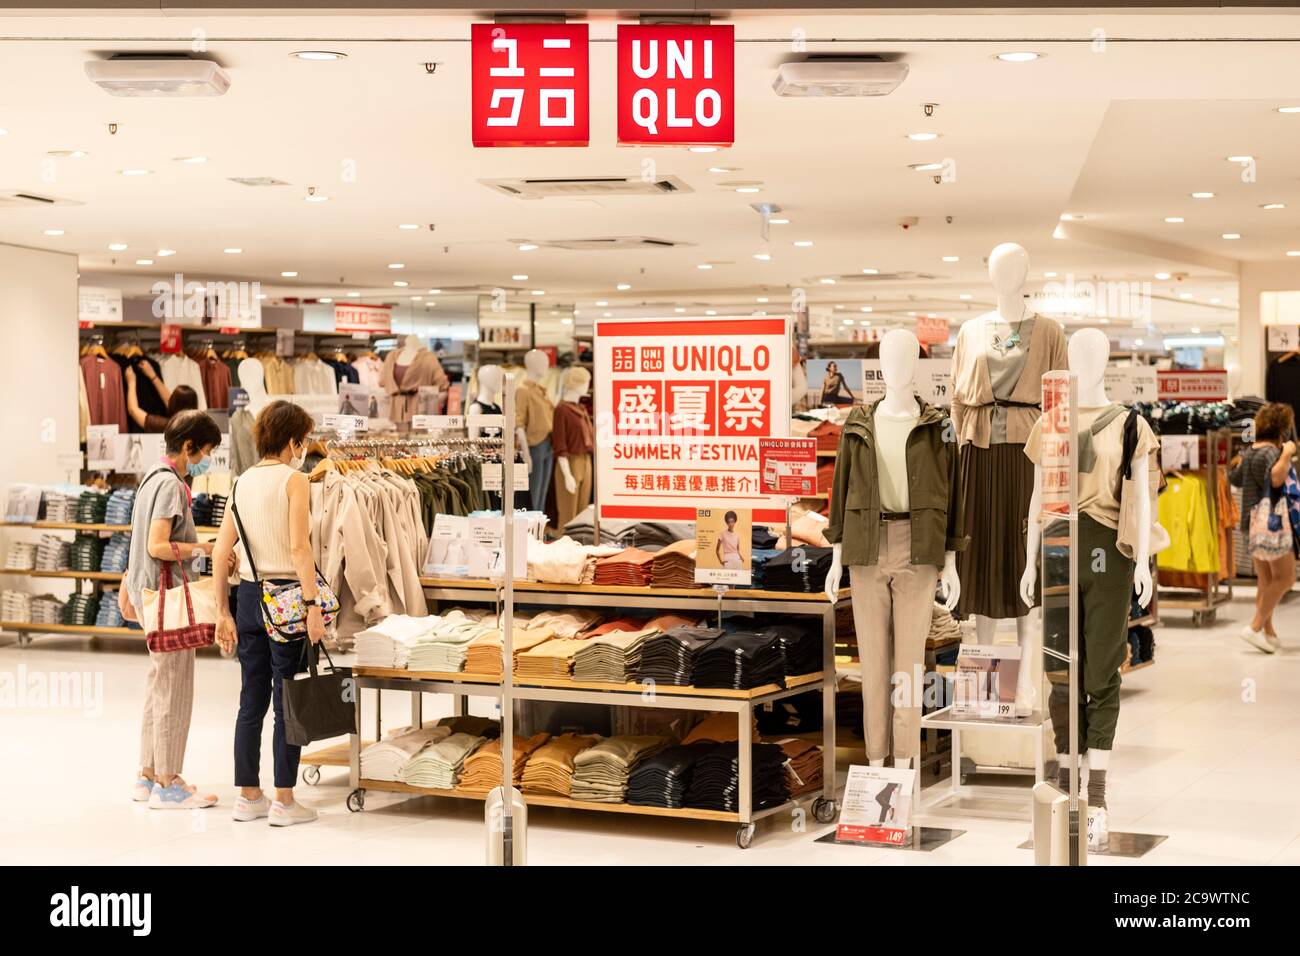 Marchio di abbigliamento giapponese, logo Uniqlo e negozio a Hong Kong Foto  stock - Alamy